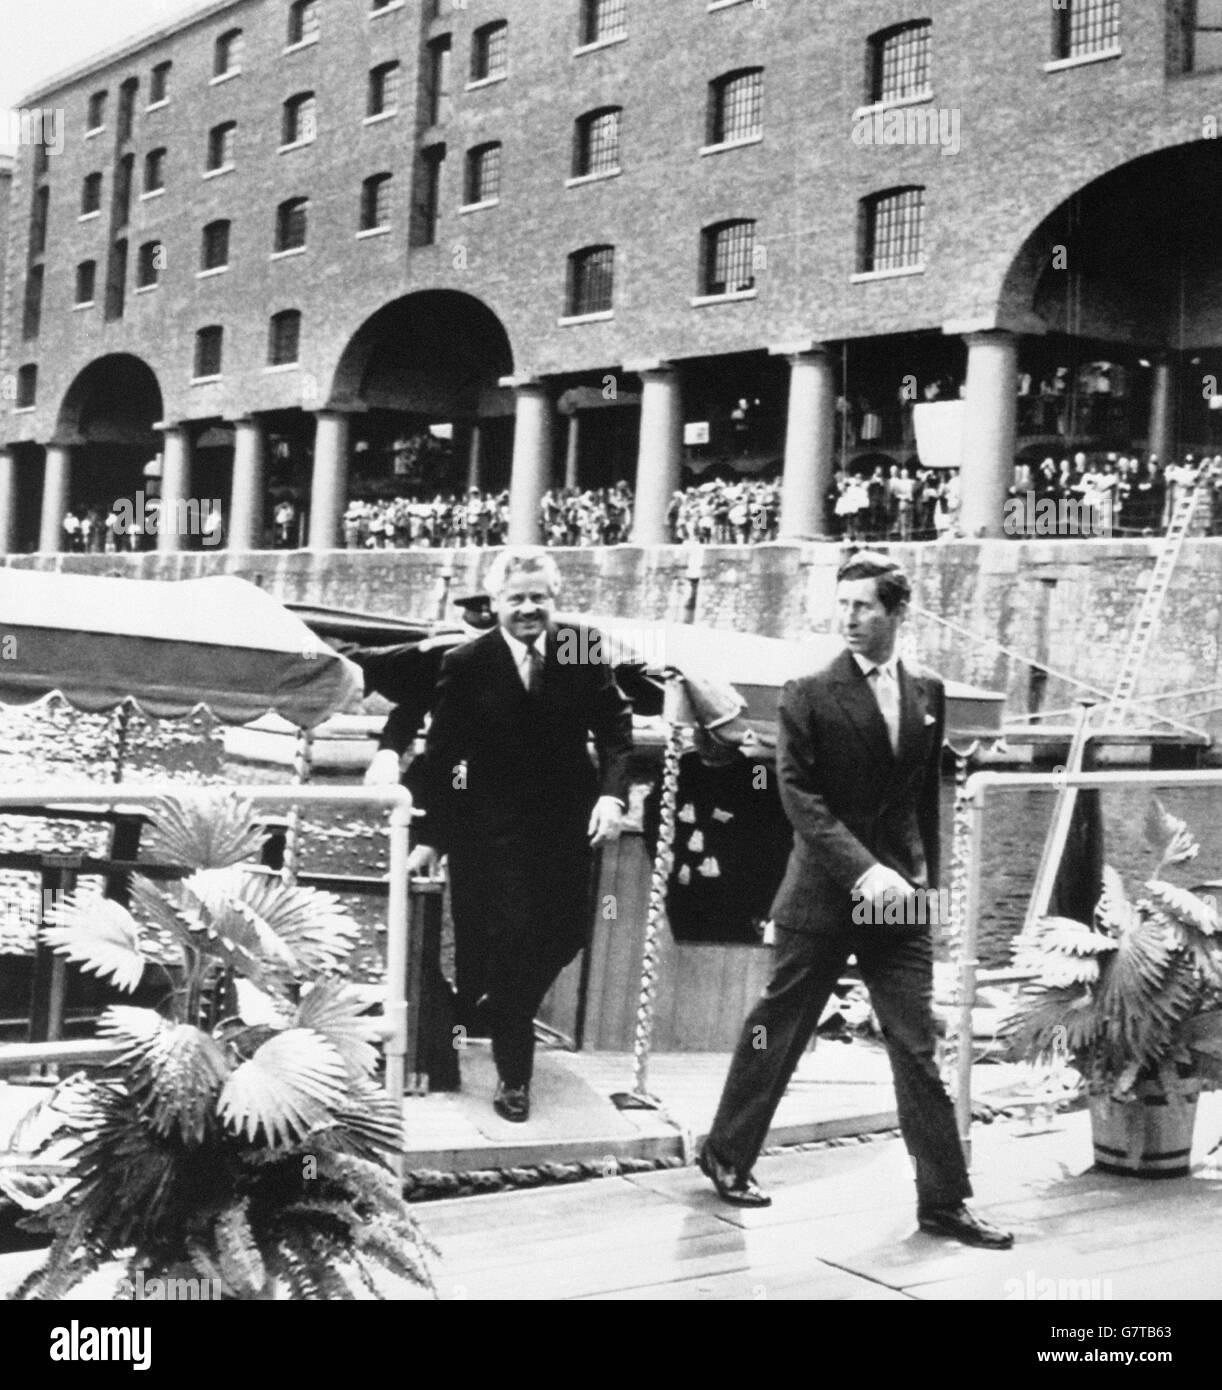 Der Prinz von Wales tritt 142 Jahre nach der Eröffnung durch seinen Urgroßvater aus einer Barge in Liverpools Albert Dock. Der Prinz öffnete das Dock zum zweiten Mal und eröffnete die neue Tate Gallery. Ihm folgt Philip Carter, Chairman der Merseyside Development Corporation. Stockfoto